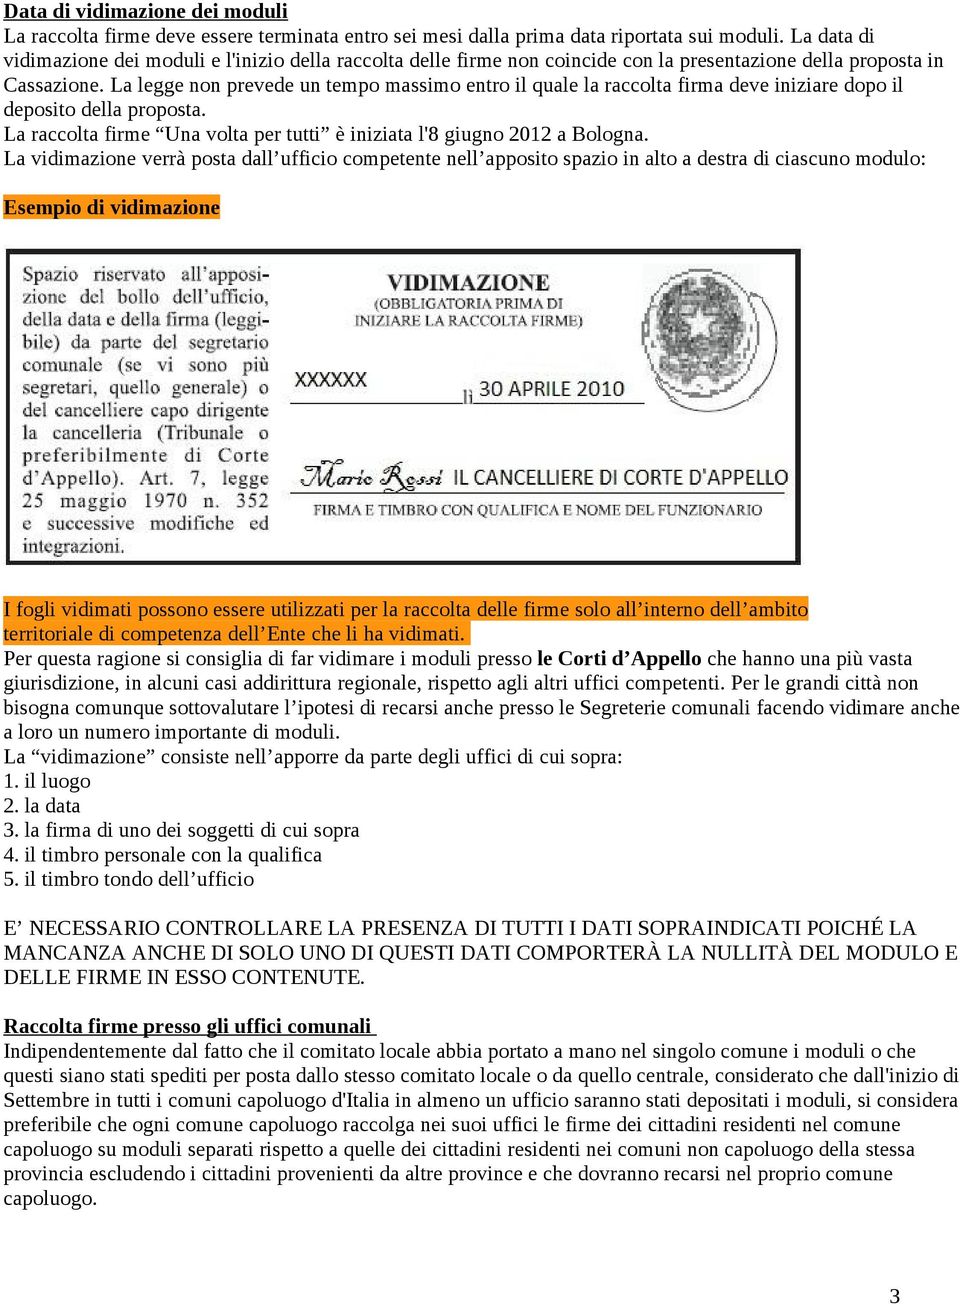 La legge non prevede un tempo massimo entro il quale la raccolta firma deve iniziare dopo il deposito della proposta. La raccolta firme Una volta per tutti è iniziata l'8 giugno 2012 a Bologna.